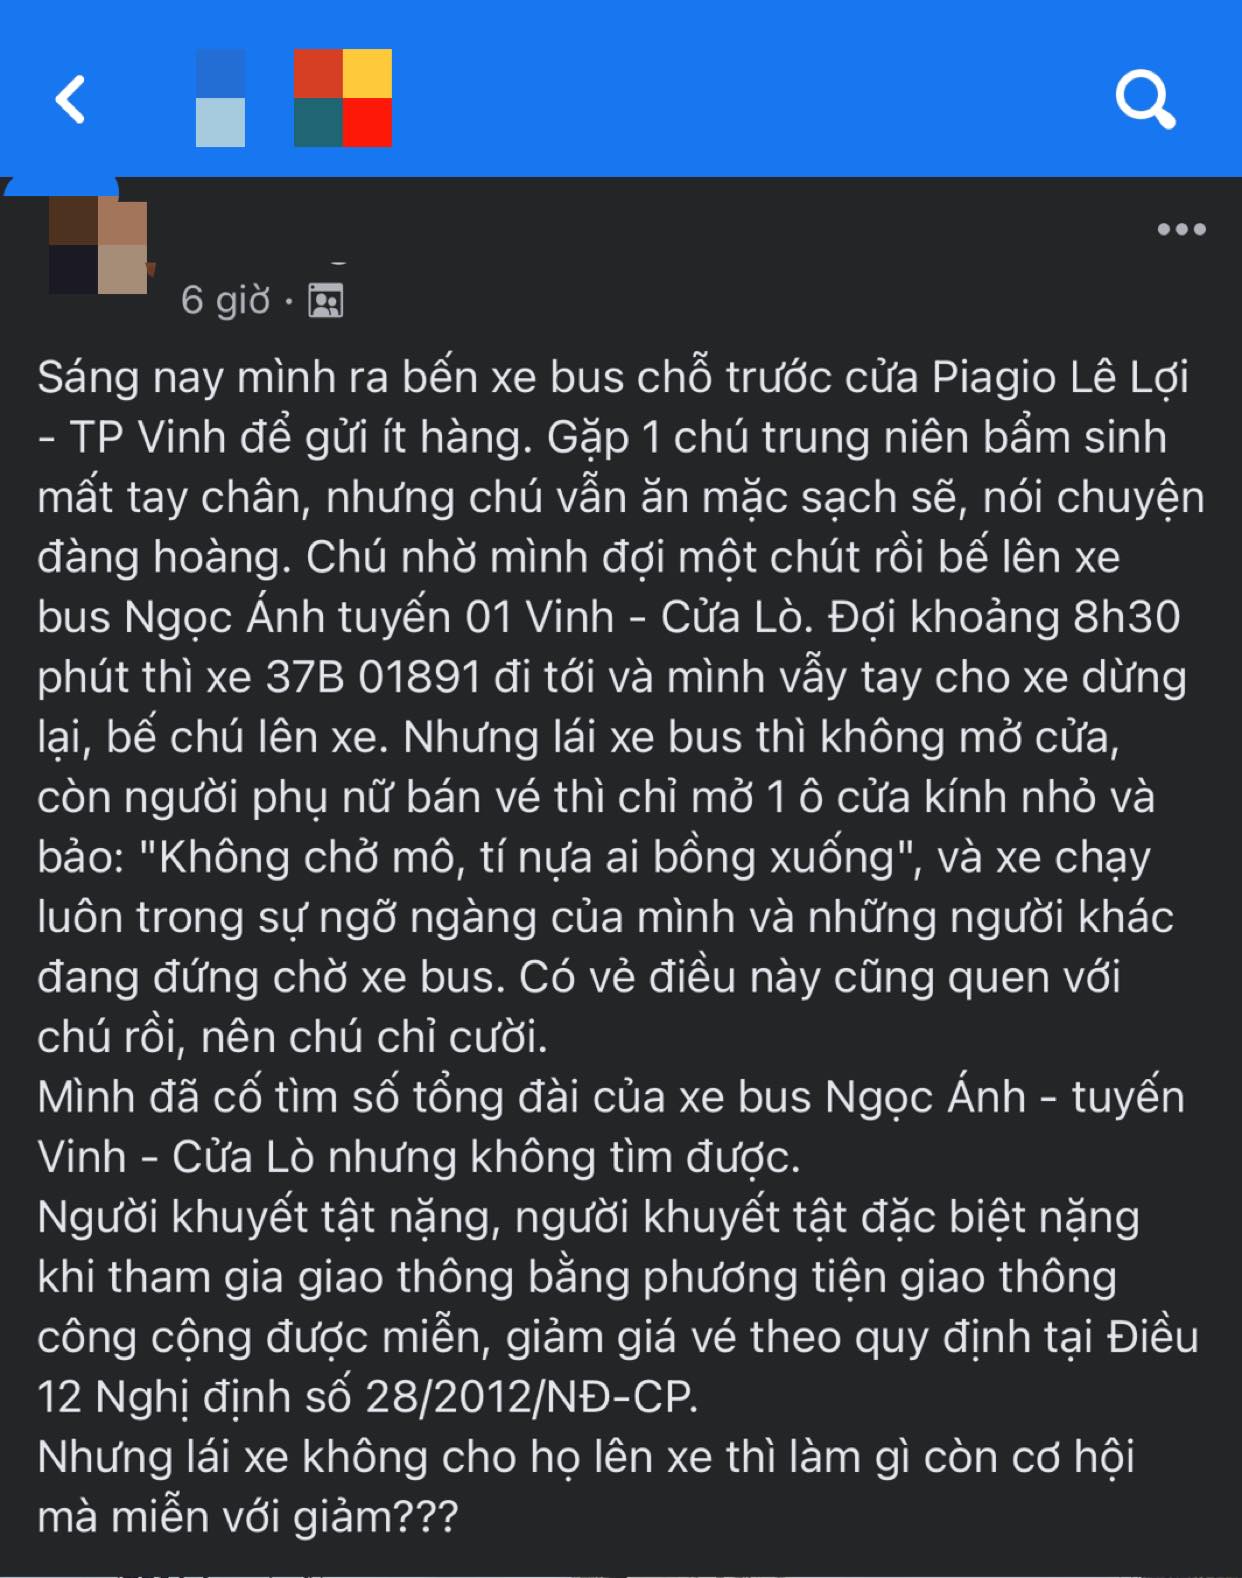 Netizen-phan-no-khi-nguoi-dan-ong-khuyet-tat-bi-lai-xe-bus-va-nguoi-ban-ve-o-vinh-tu-choi-cho